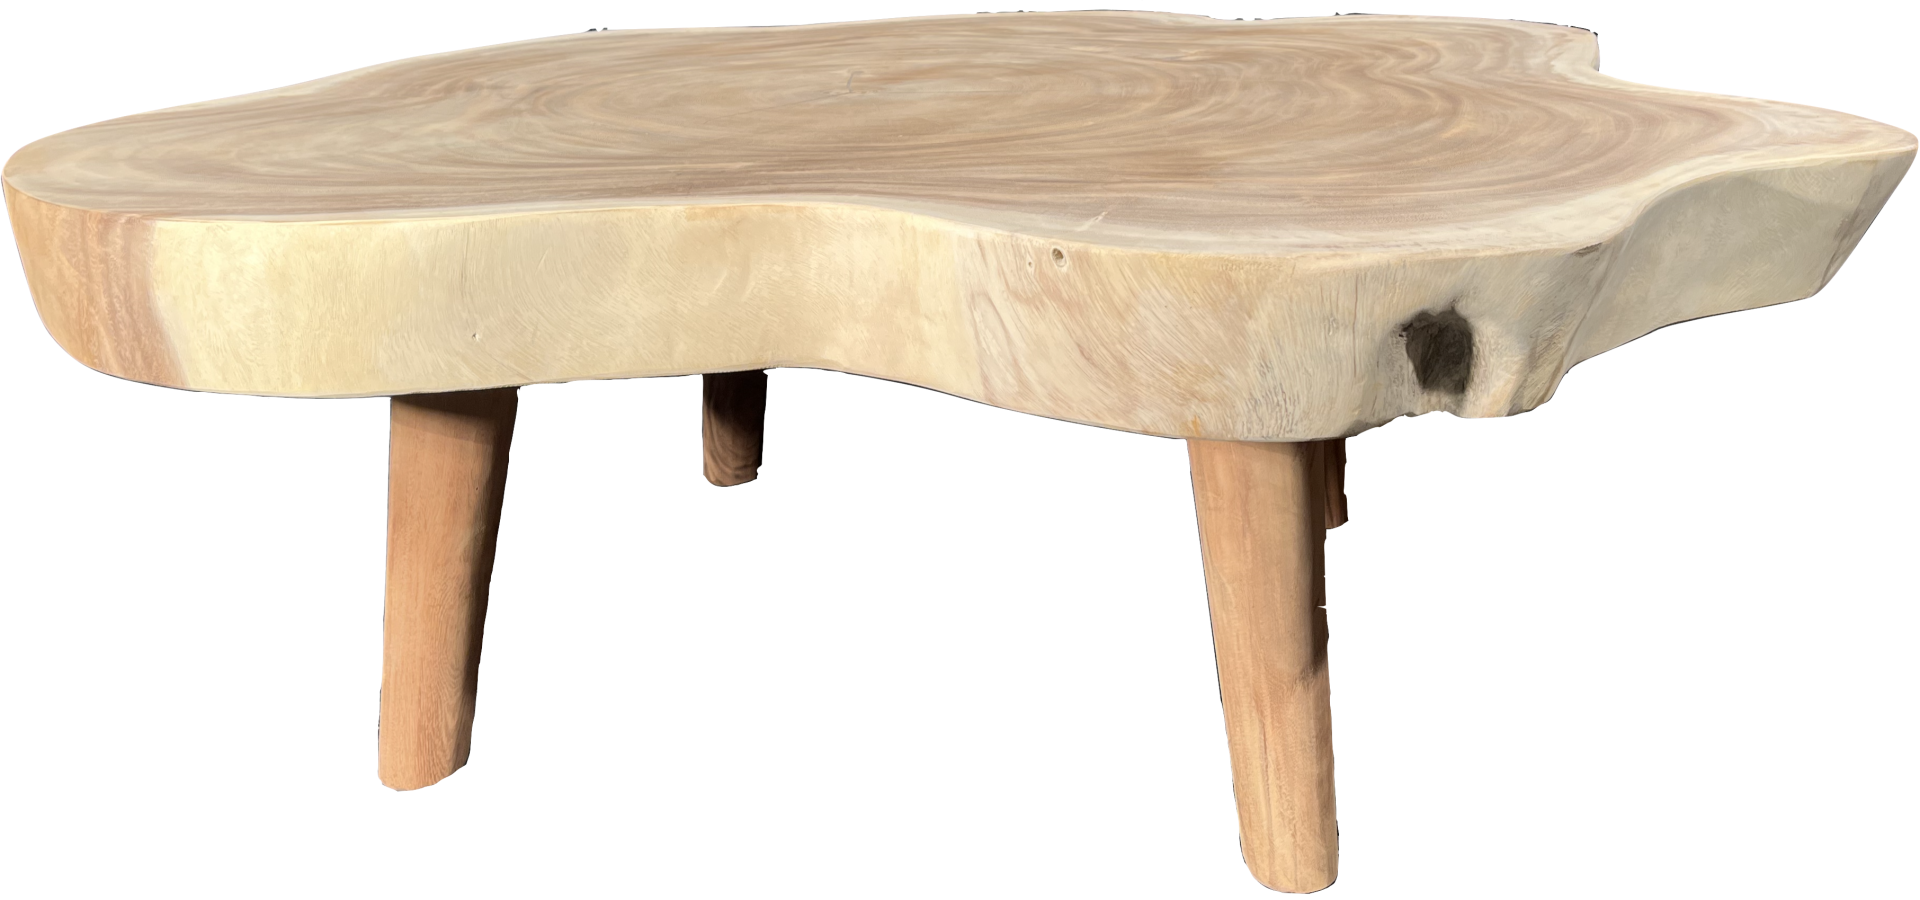 FaKOPA s. r. o. TRUNK - konferenční stolek ze suaru 140 x 135 cm, suar